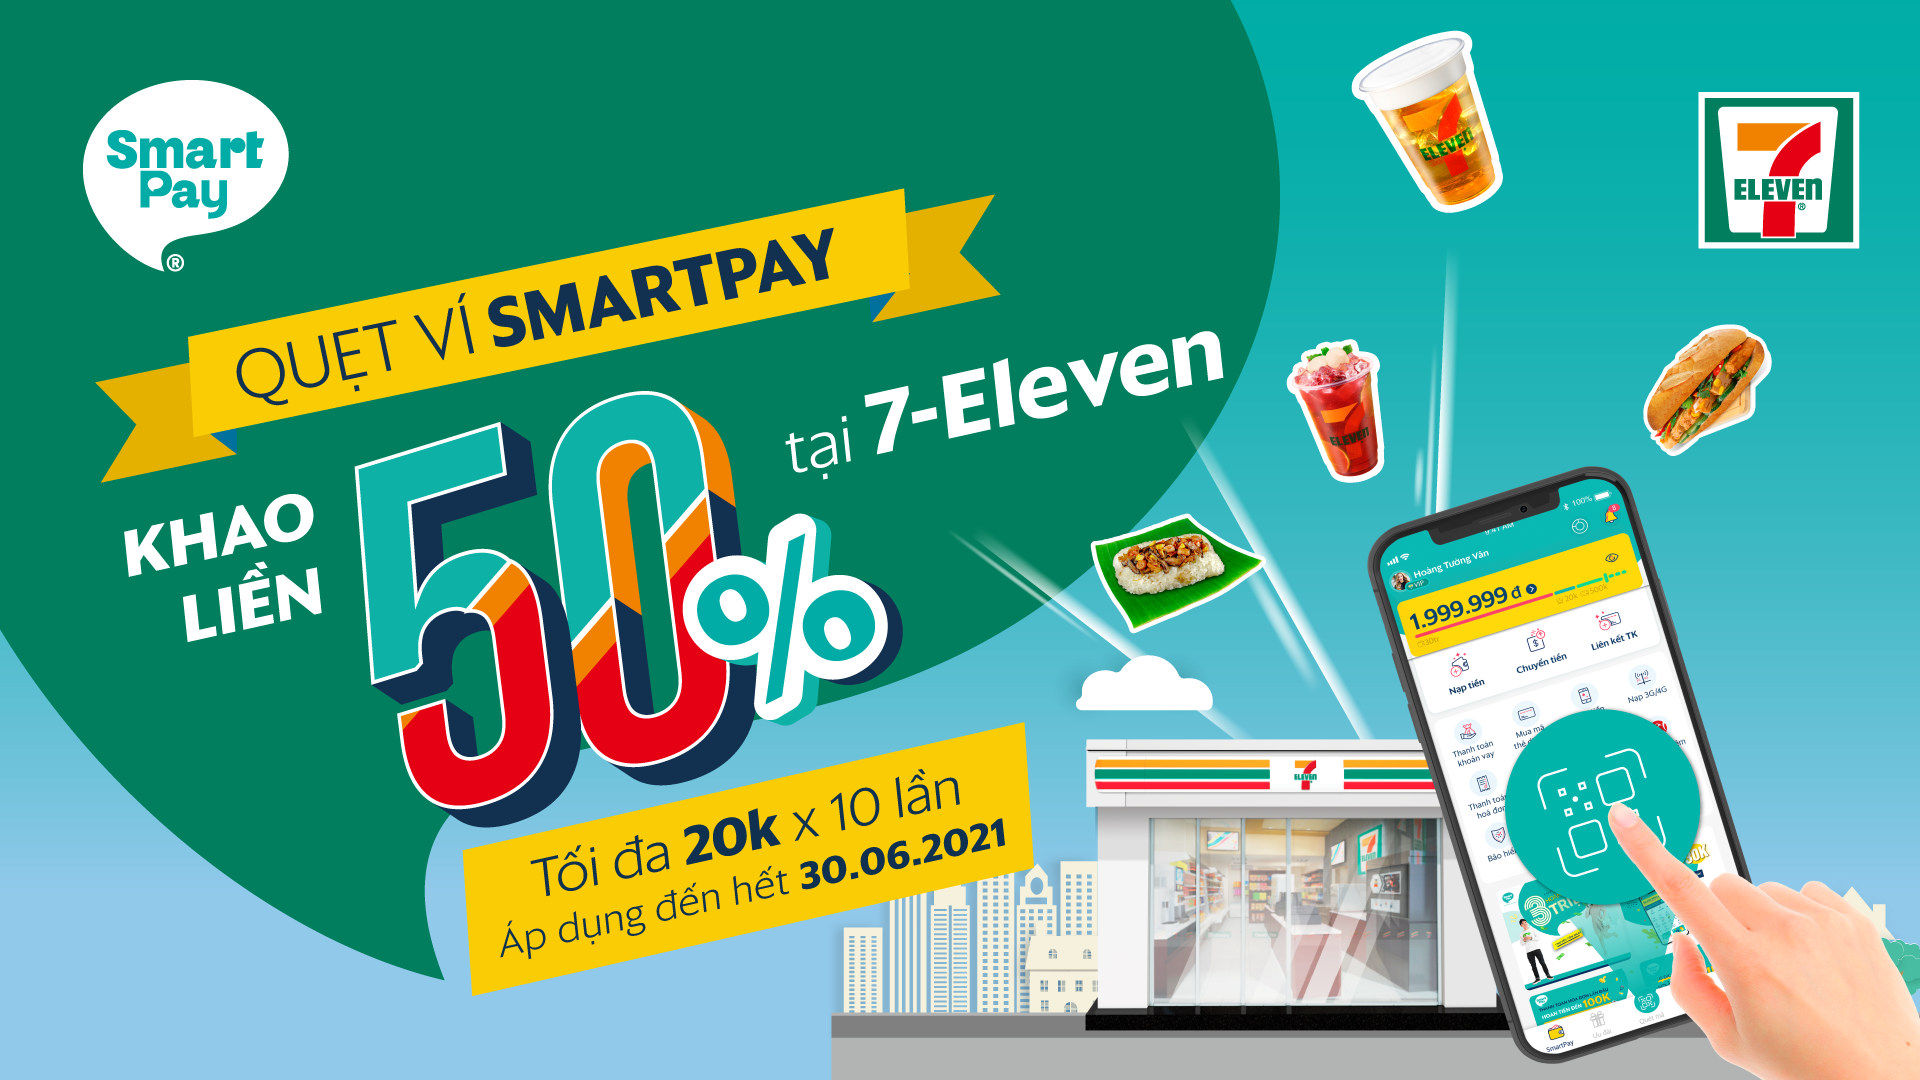 Săn ưu đãi SmartPay giảm 50% tại 7-Eleven